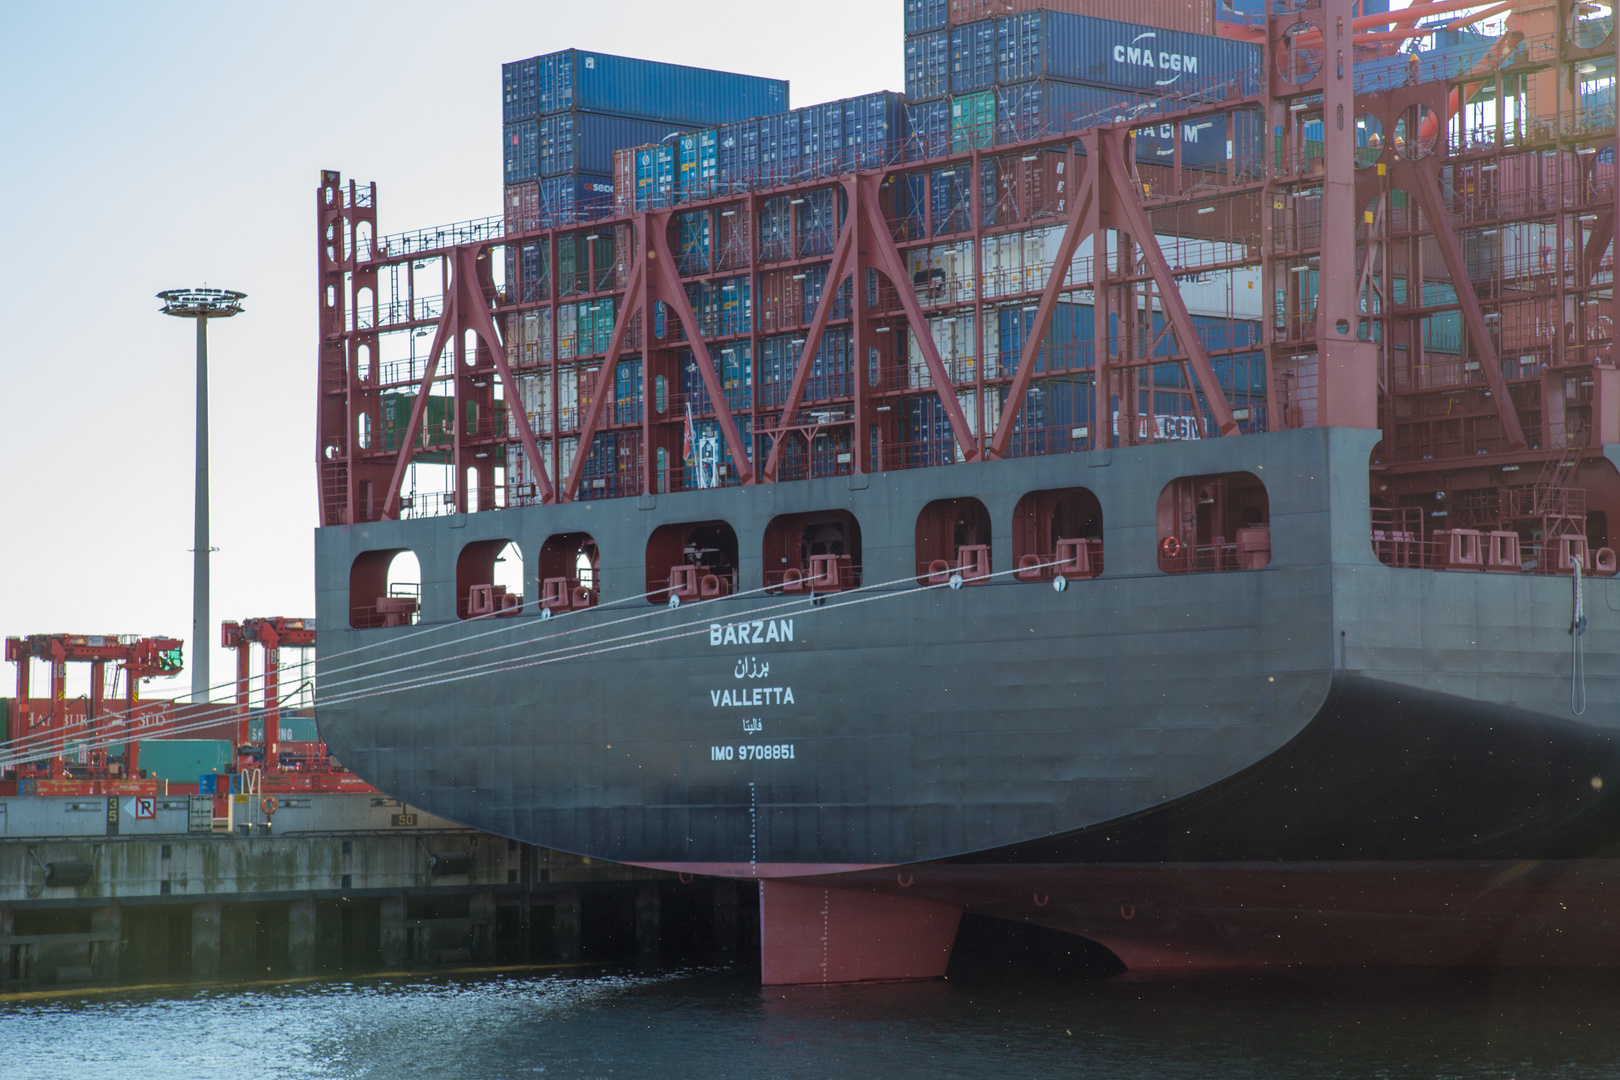 das längste Containerschiff am Eurogate vor Anker